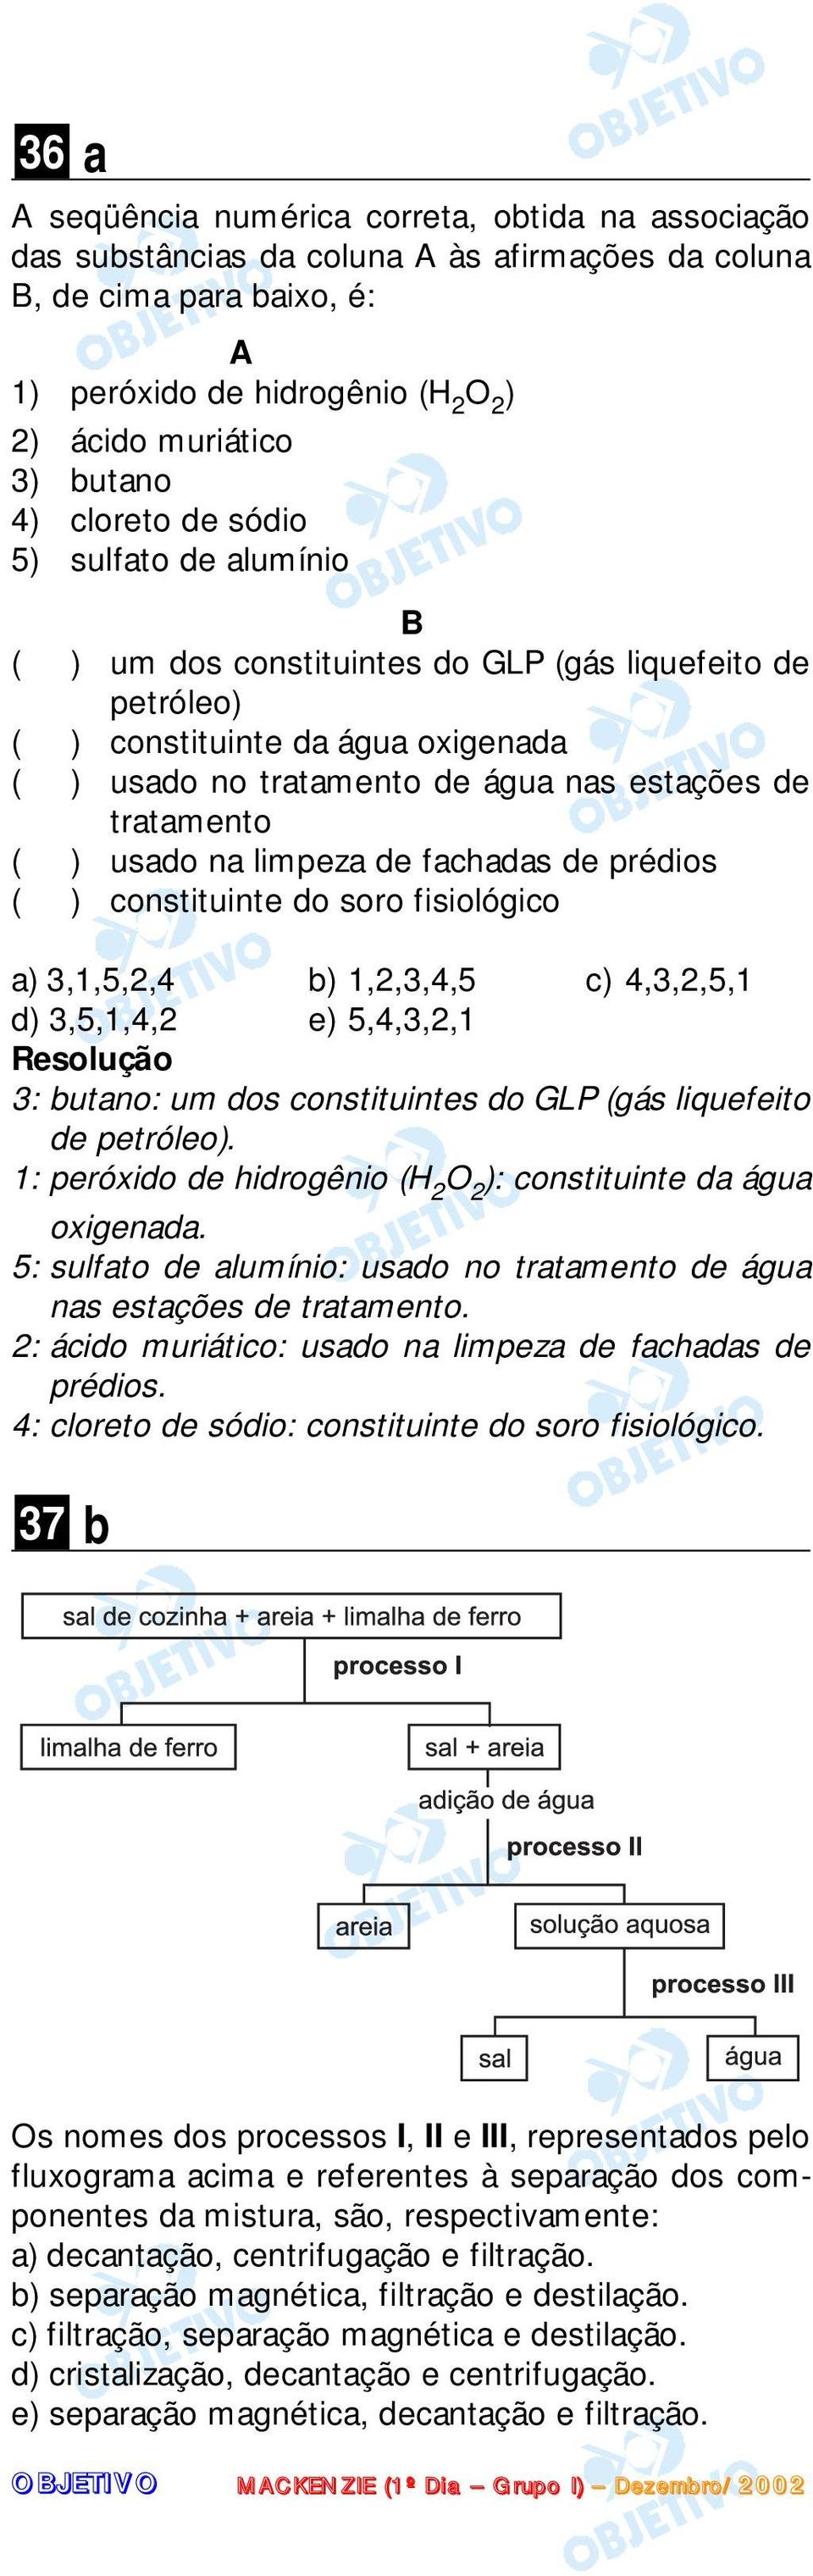 tratamento ( ) usado na limpeza de fachadas de prédios ( ) constituinte do soro fisiológico a) 3,1,5,2,4 b) 1,2,3,4,5 c) 4,3,2,5,1 d) 3,5,1,4,2 e) 5,4,3,2,1 3: butano: um dos constituintes do GLP